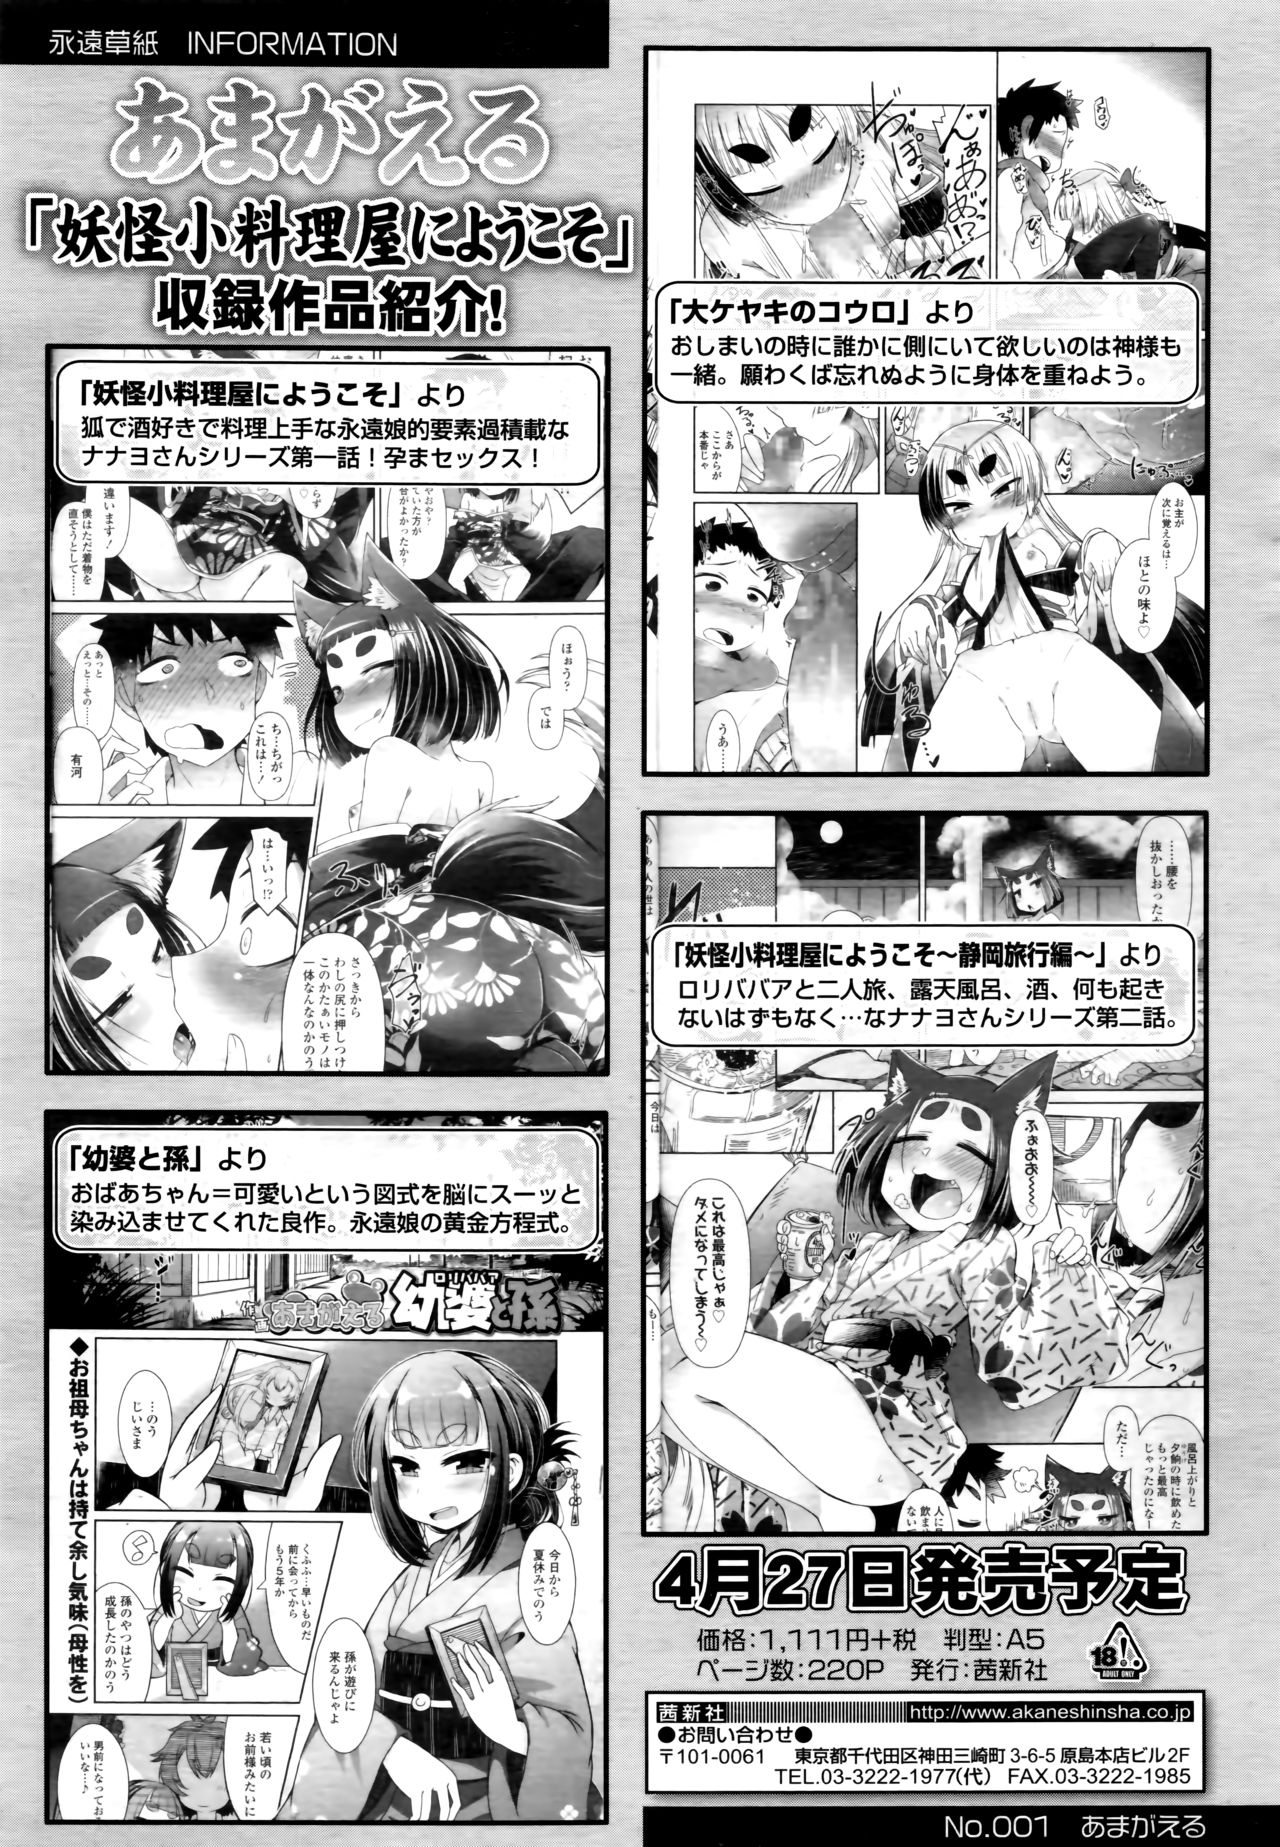 Towako 6 page 8 full